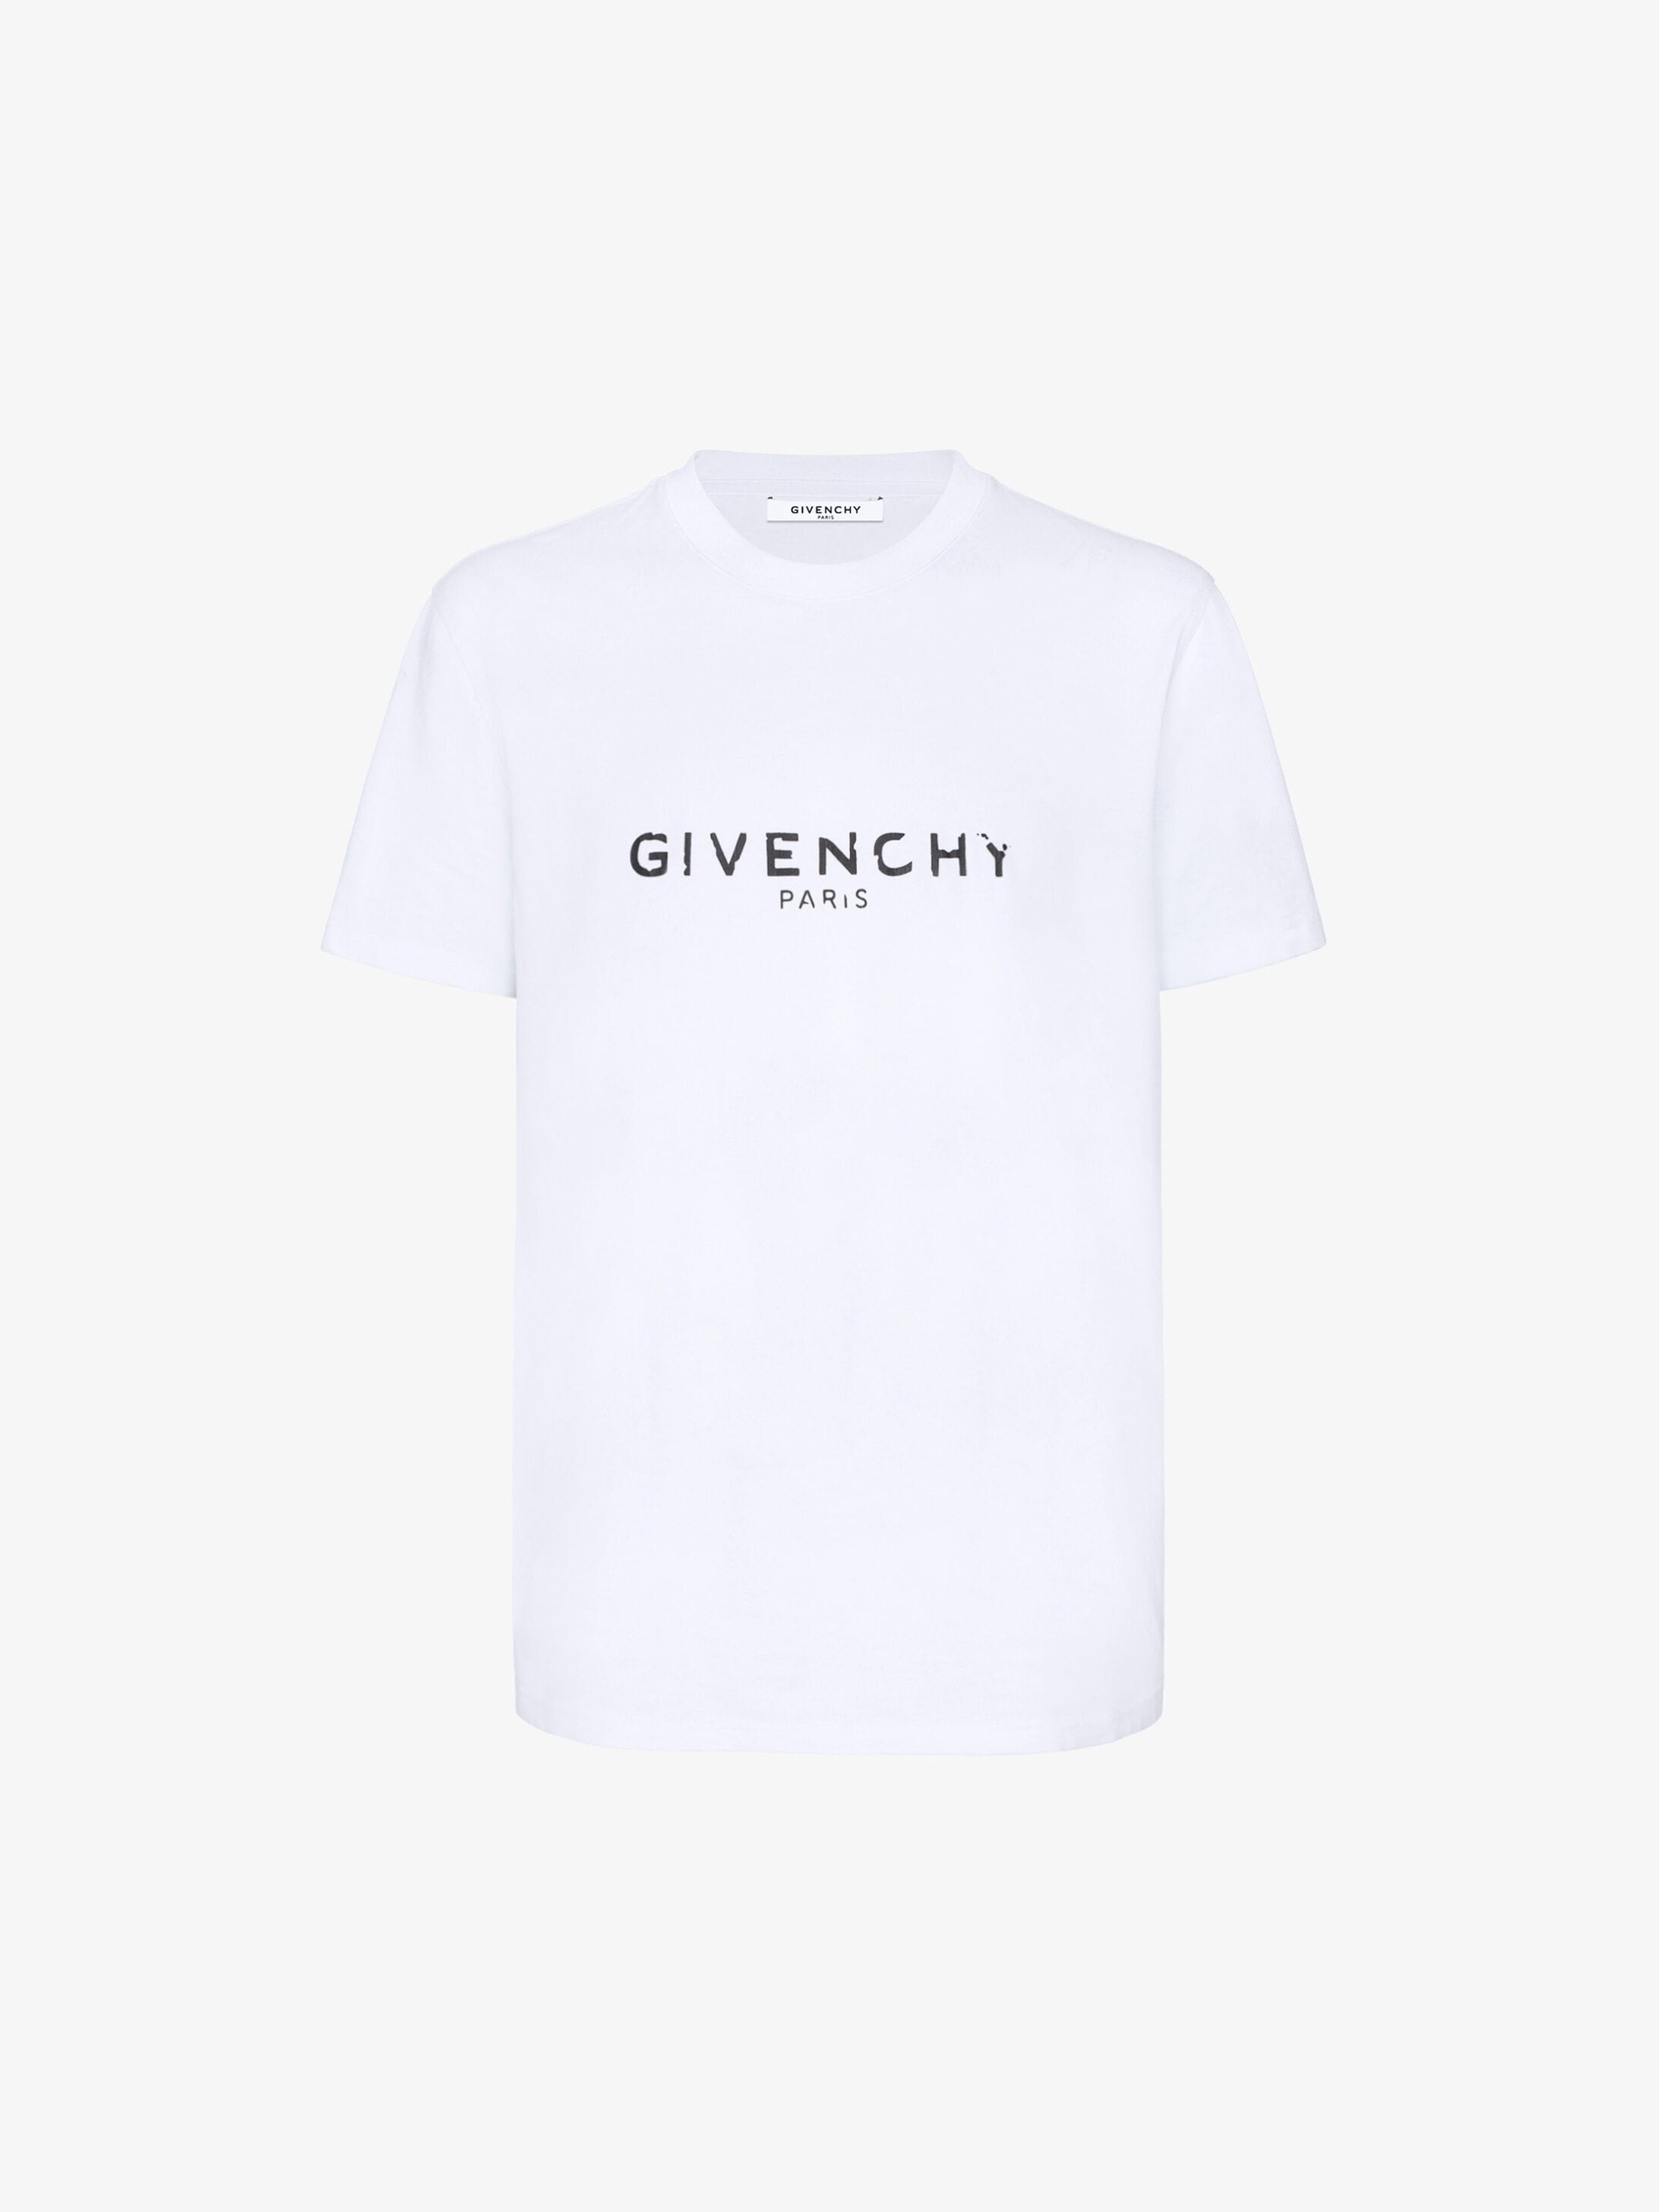 Herren Kleidung Givenchy Herren T-Shirts & Polos Givenchy Herren T-Shirts Givenchy Herren T-Shirts GIVENCHY 3 T-Shirts Givenchy Herren schwarz L 